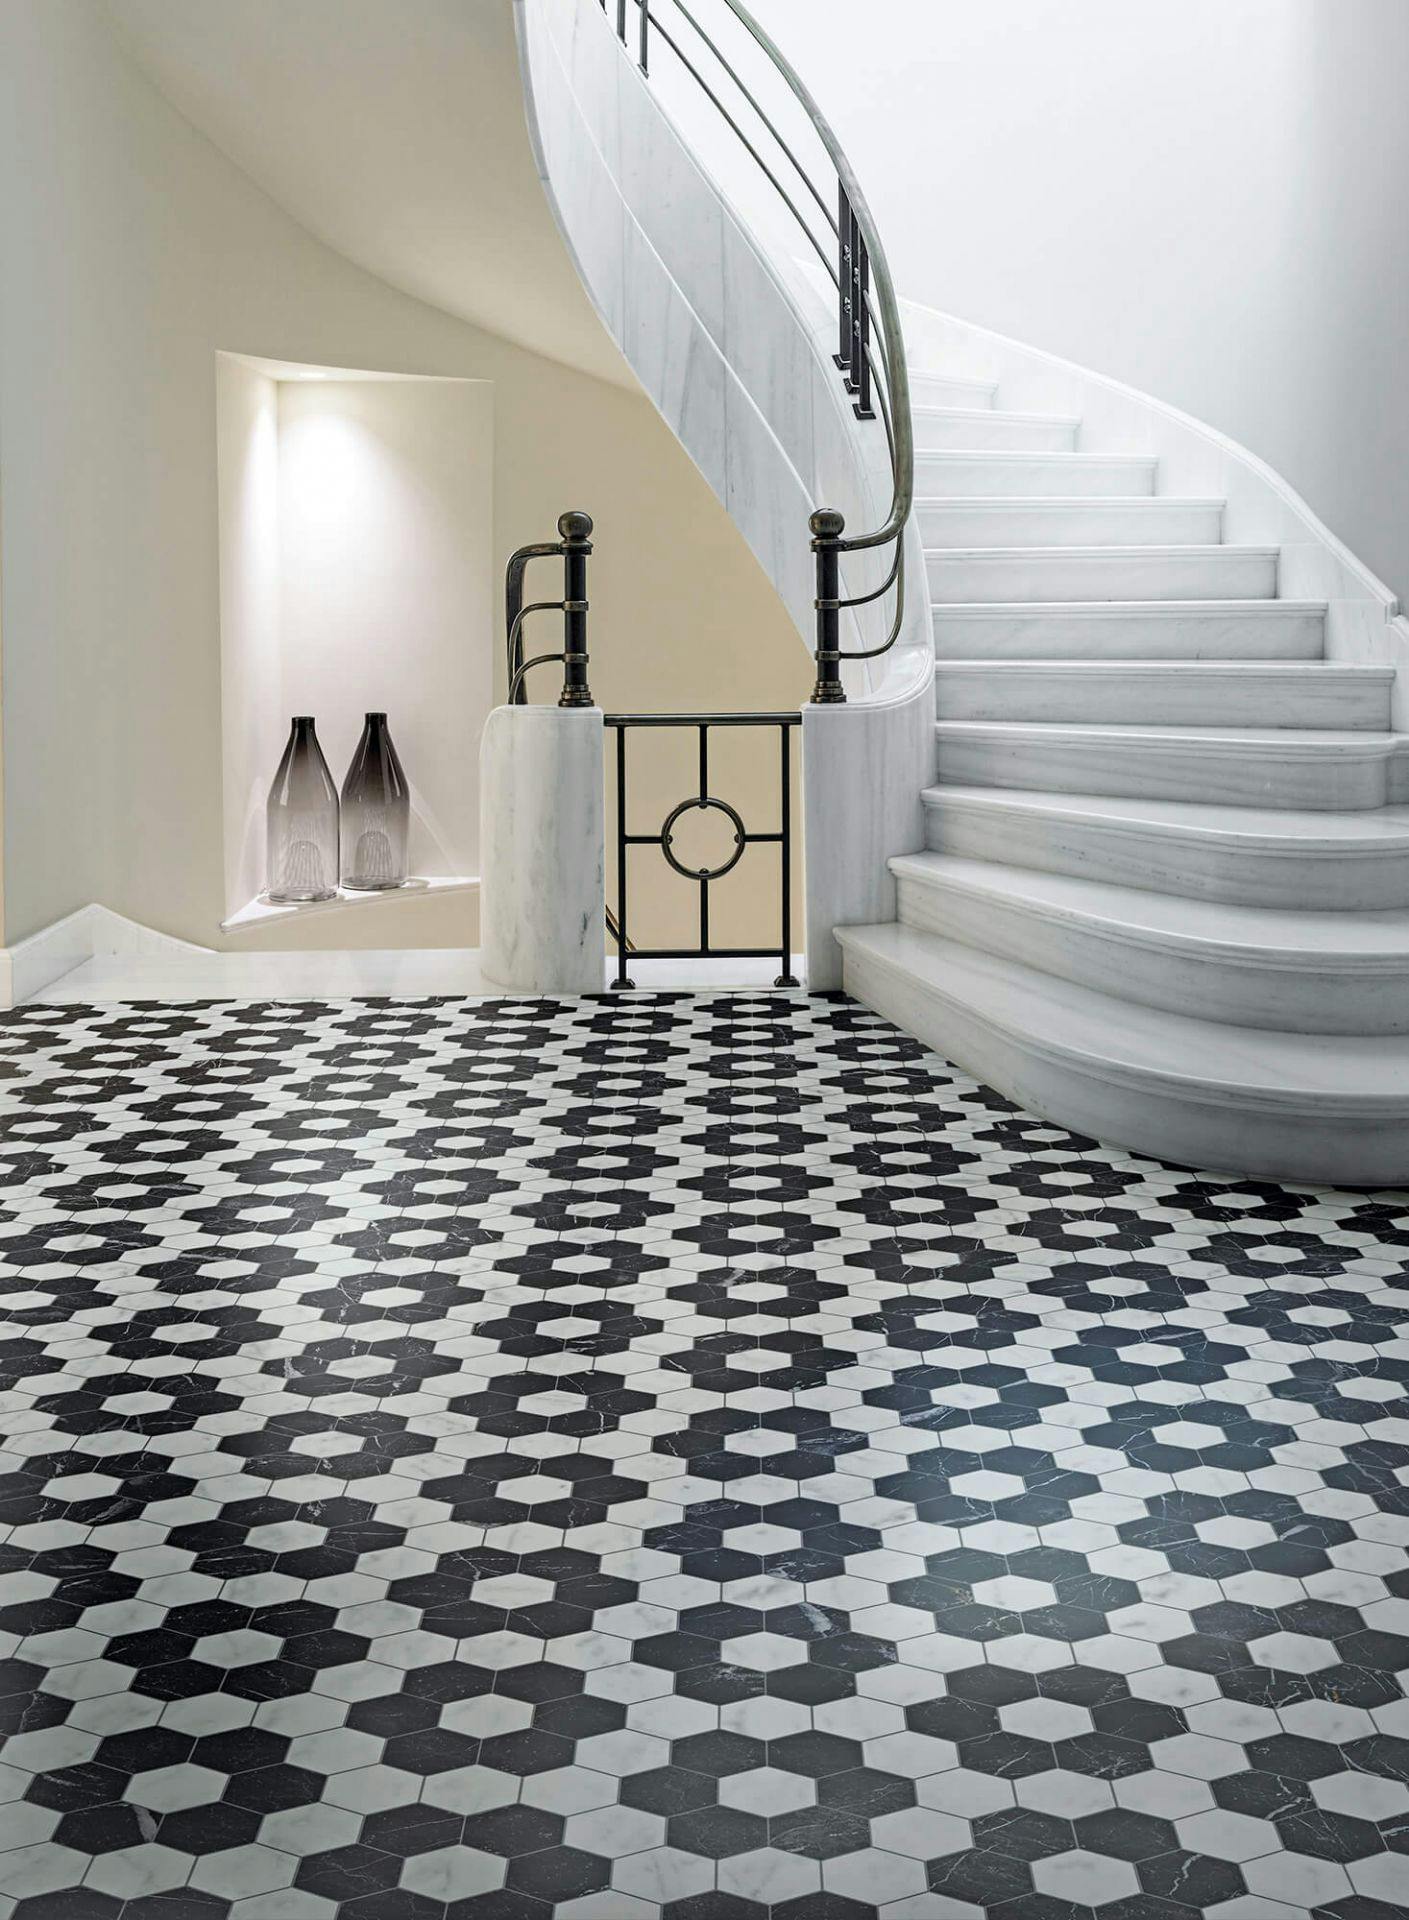 Entrada de casa estilo clássico com escadaria em caracol. Chão em mármore mate com padrão geométrico em preto e branco. Acabamento aveludado e sem reflexo. Bisazza, coleção Marmo Matt